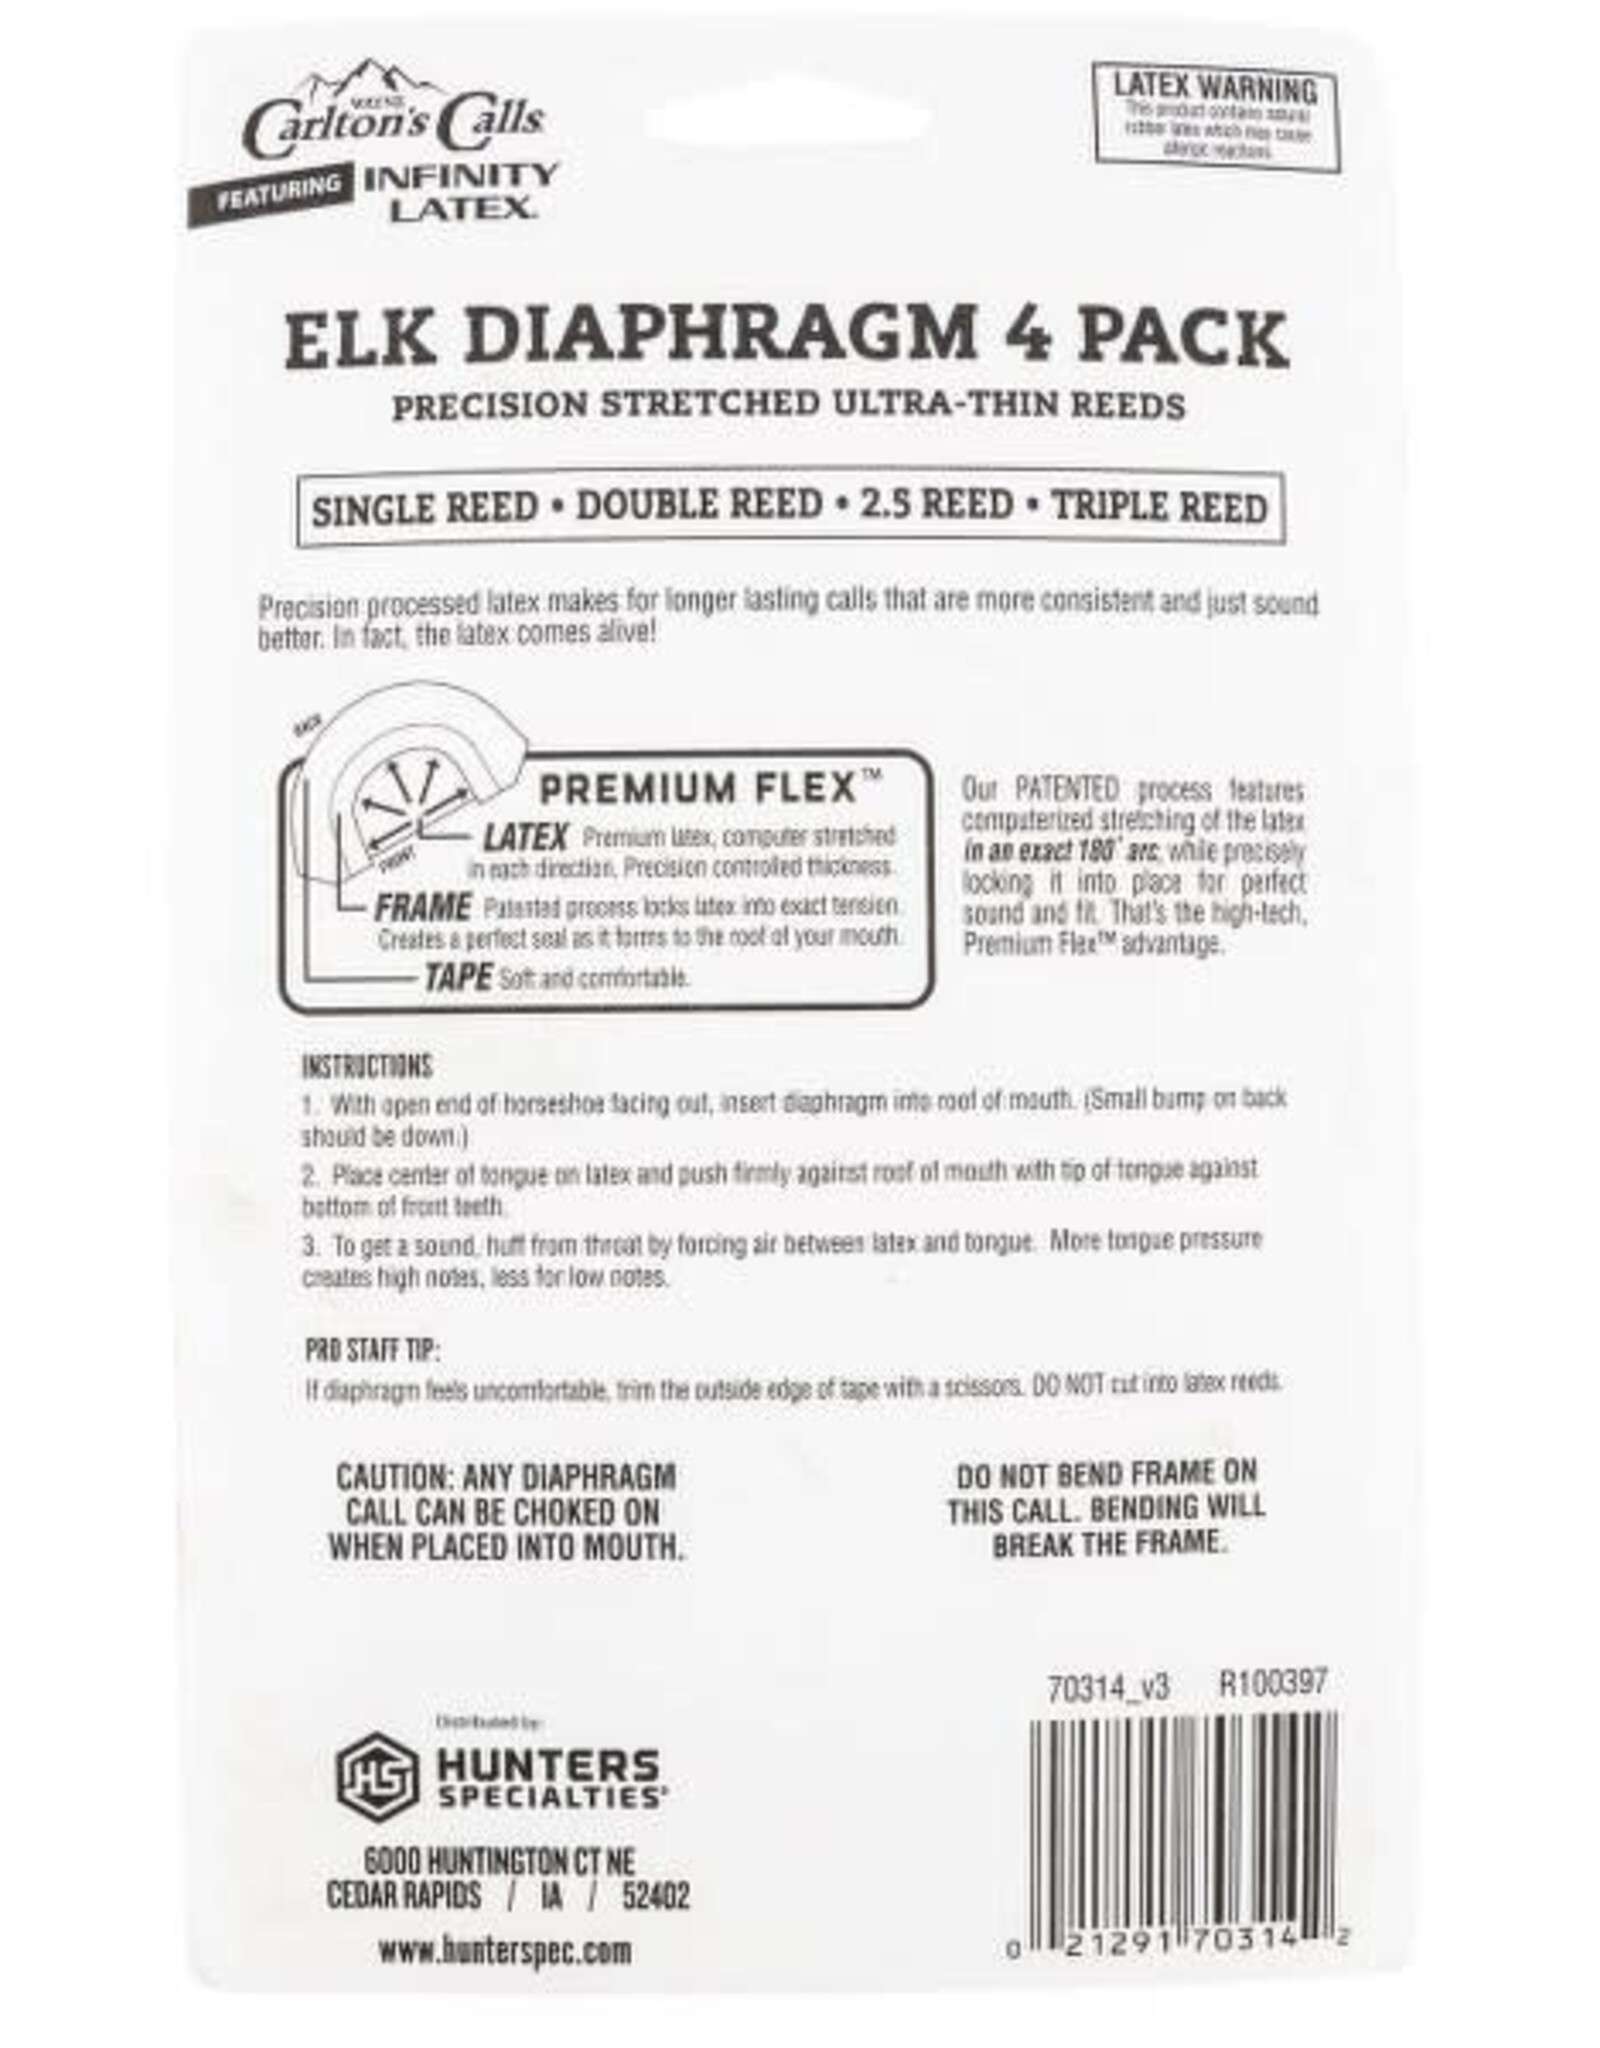 Wayne Carlton's Calls - Essential Elk Diaphragm 4 Pack